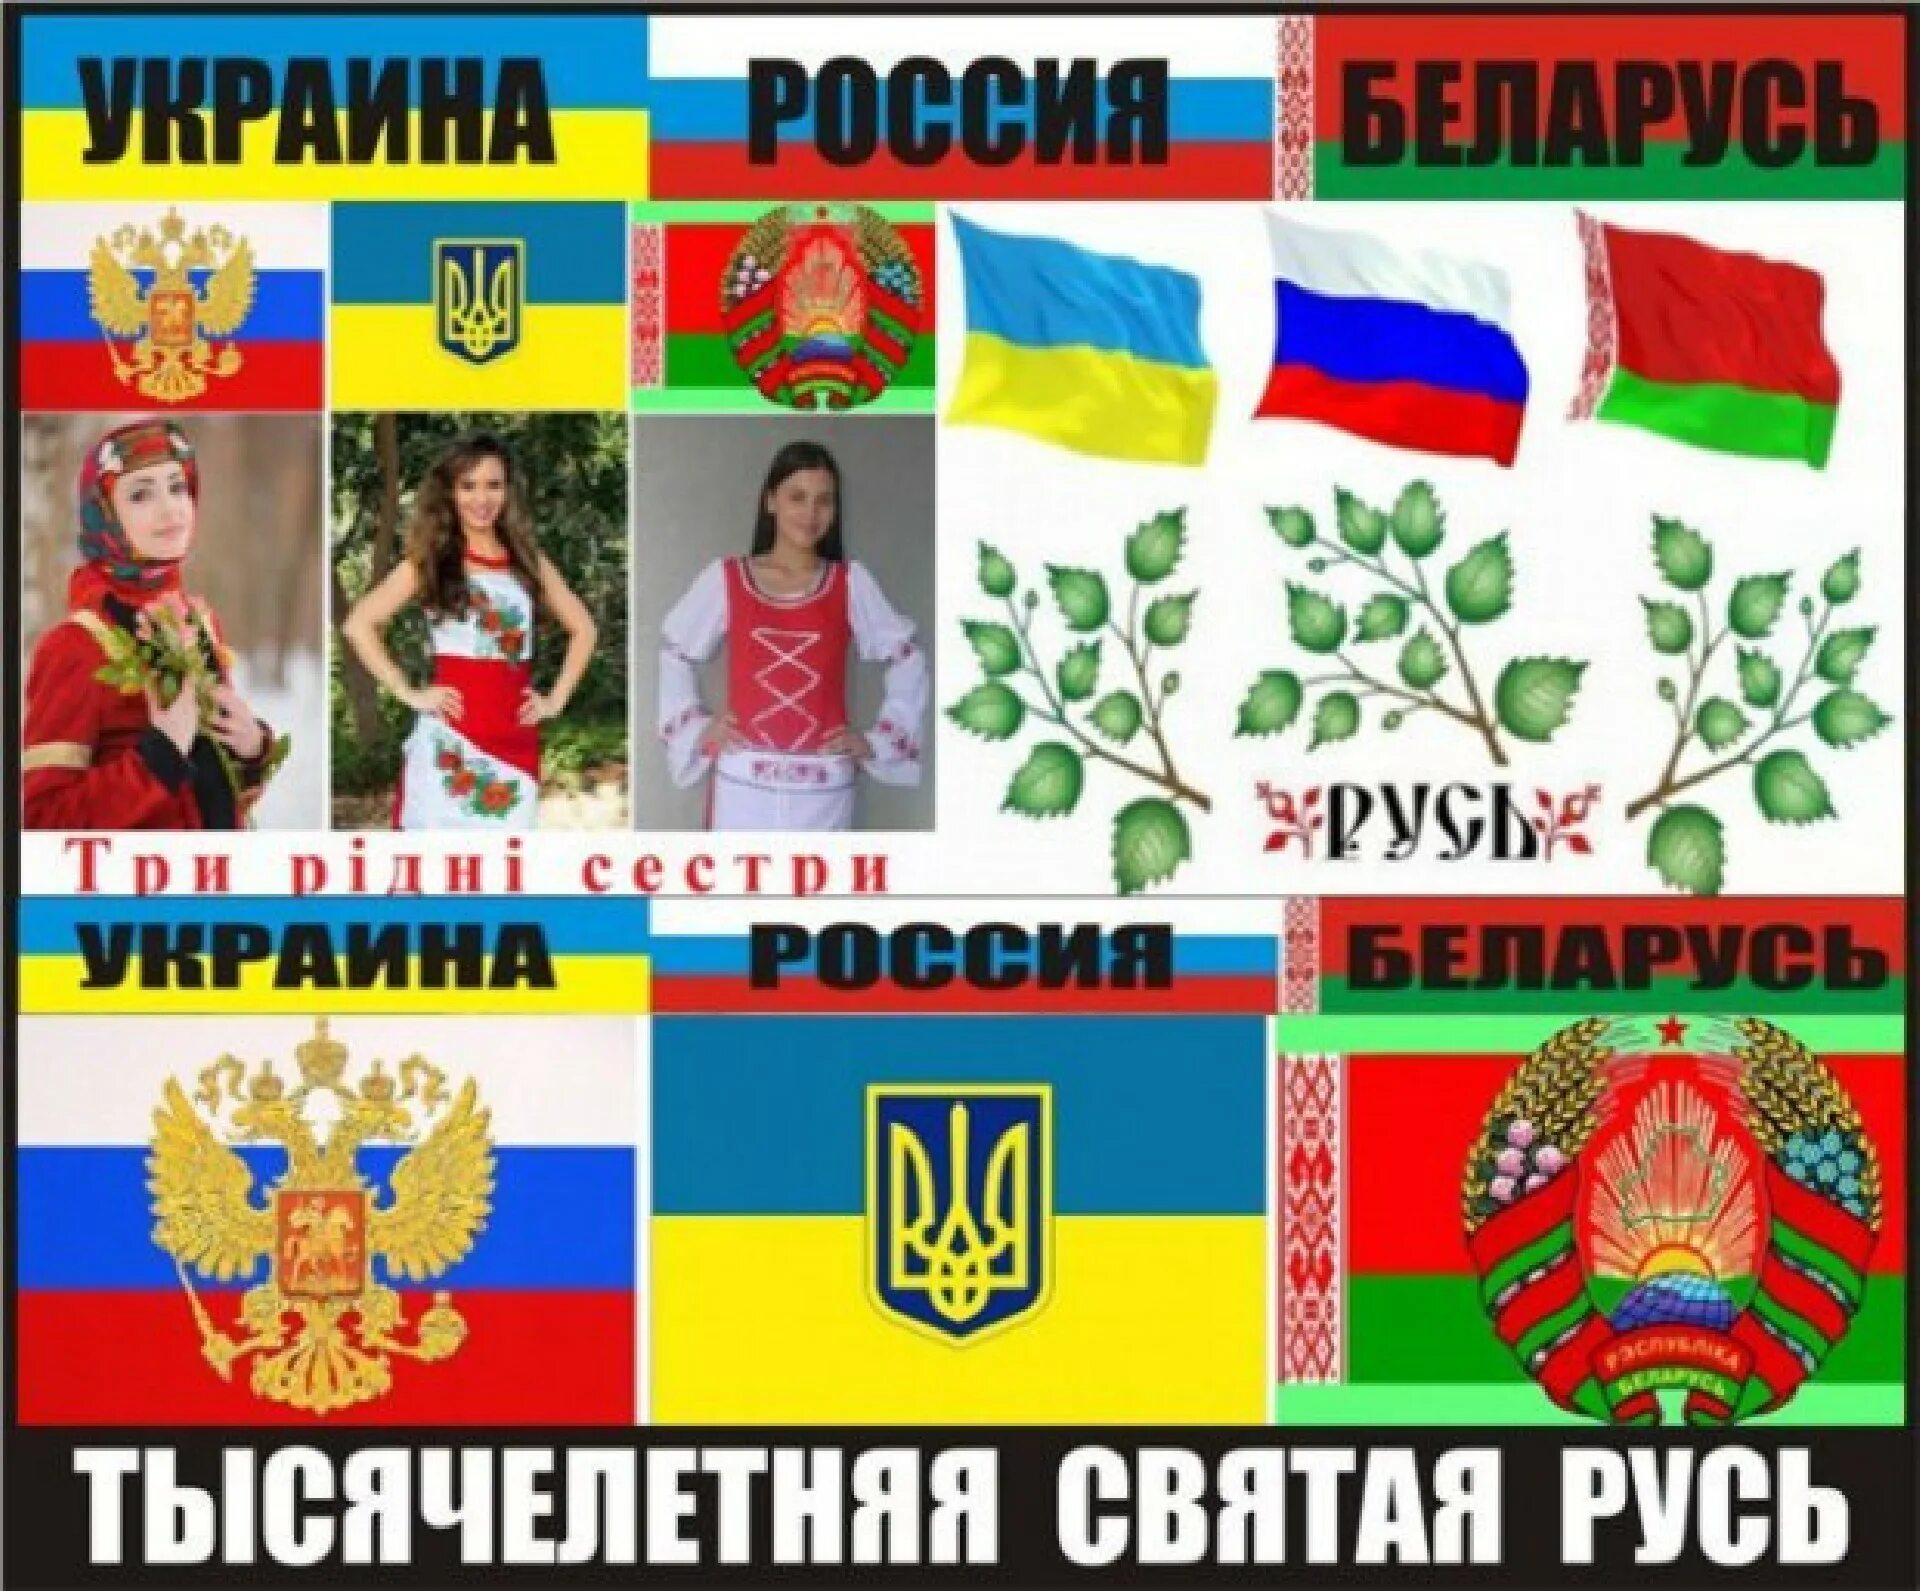 Россия Украина Беларусь. Украина – это Россия. Россия Украина Беларусь вместе. Русь Россия Украина Беларусь.